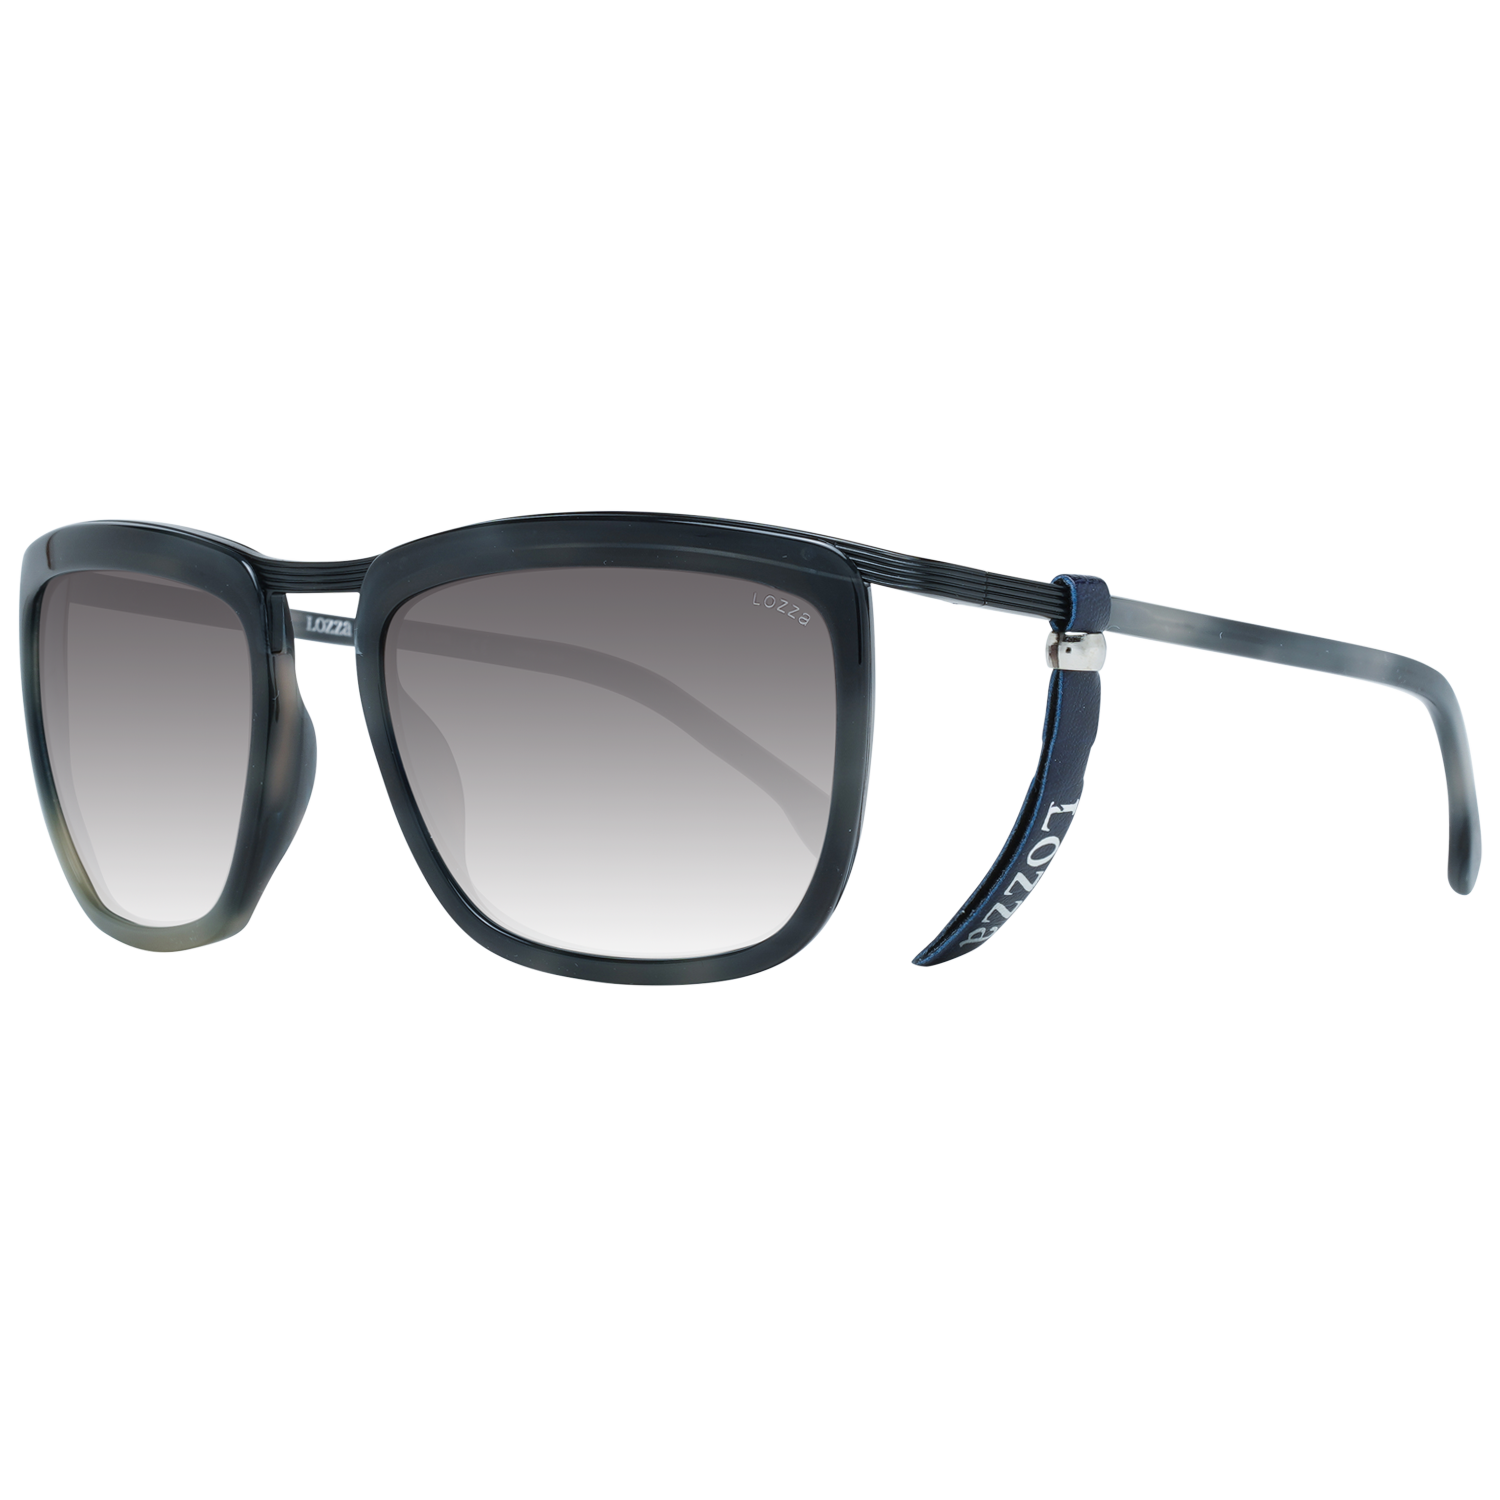 Lozza Sunglasses SL2283M 0531 55 Black